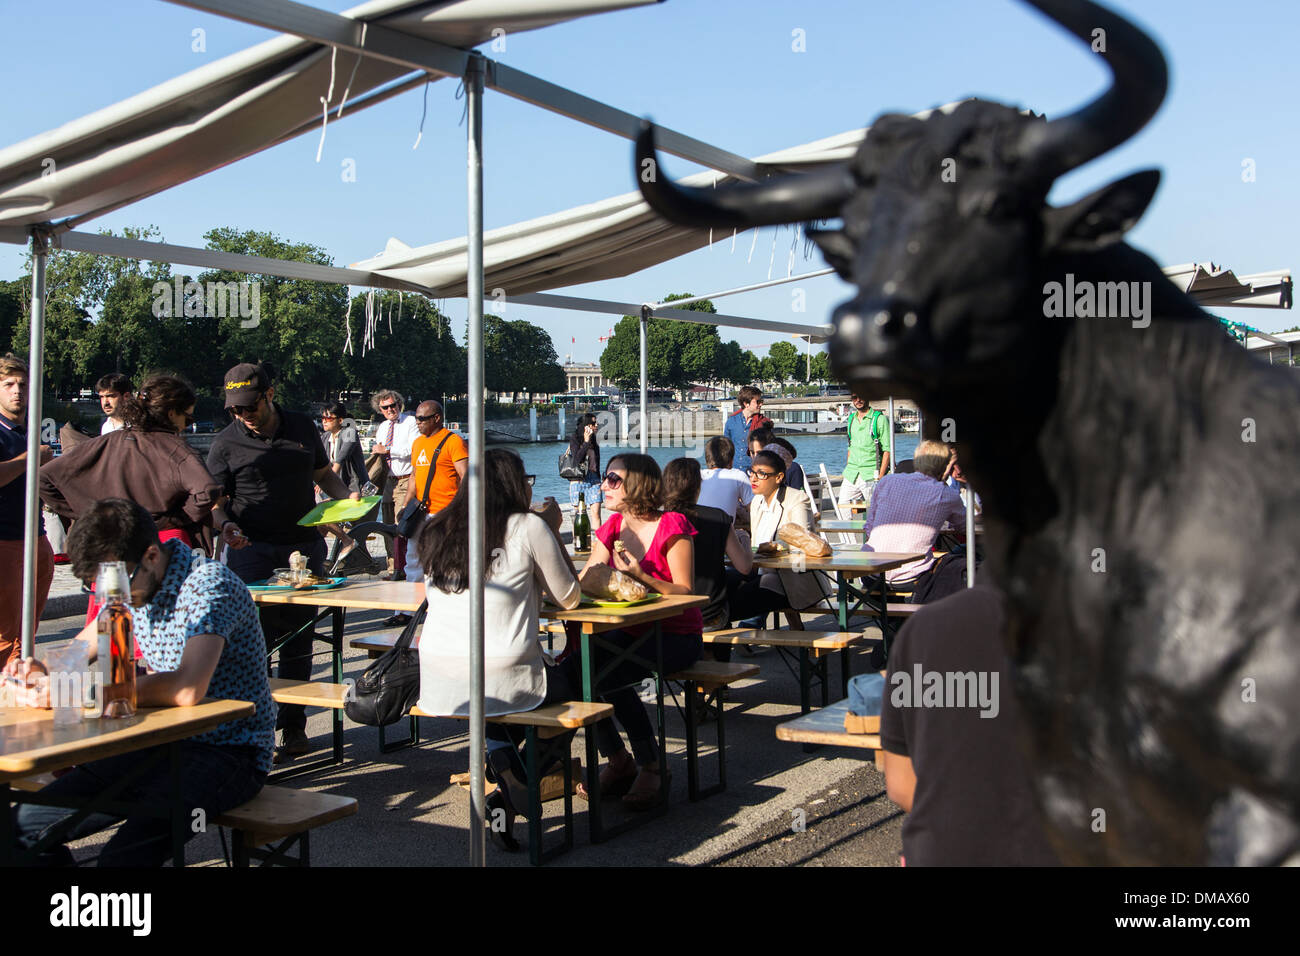 OPEN-AIR bar sulle rive della Senna, chiusa al traffico, un luogo per passeggiate e attività per i parigini, banchina d'Orsay, Parigi (75), Francia Foto Stock